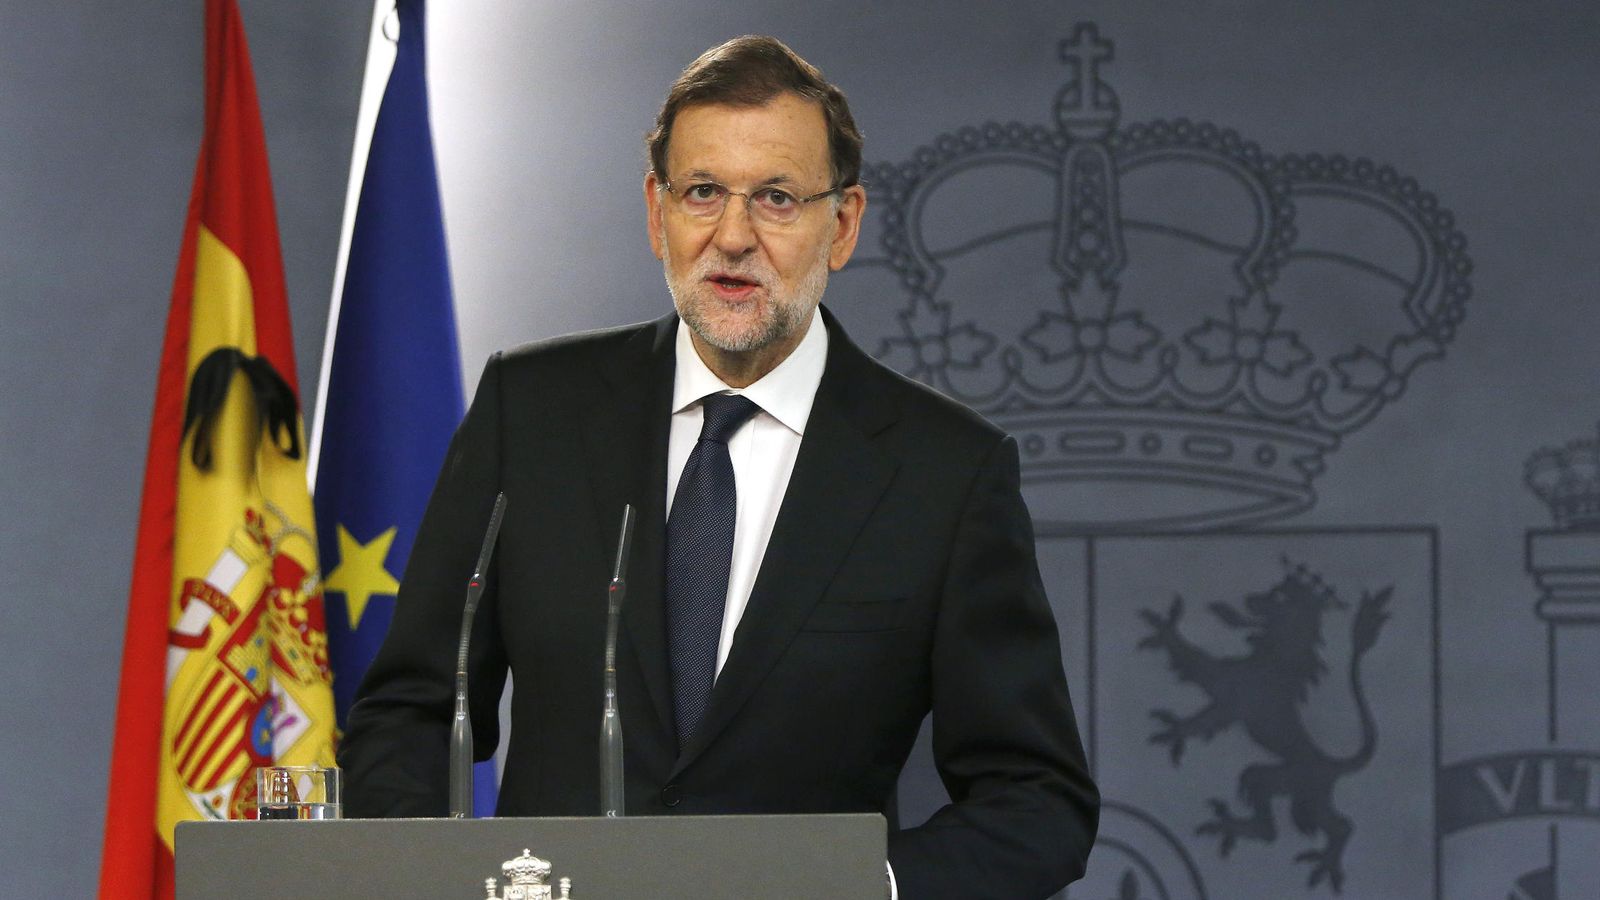 Foto: Rajoy dice que los atentados son una lucha entre civilización y barbarie. (EFE)